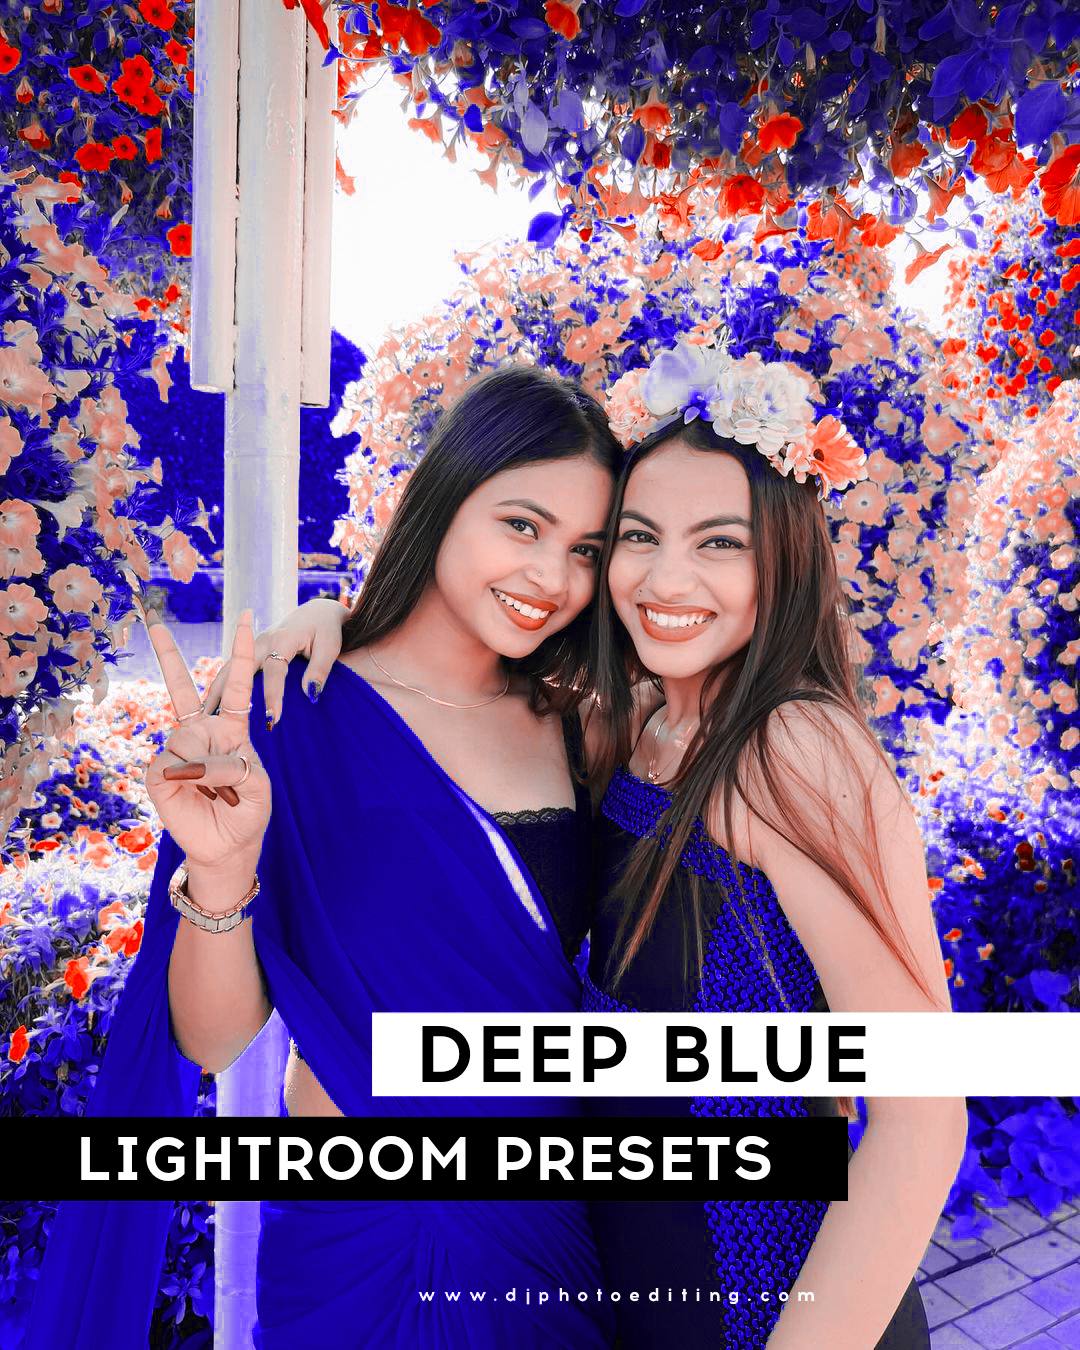 Deep Blue Lightroom Presets Free Download